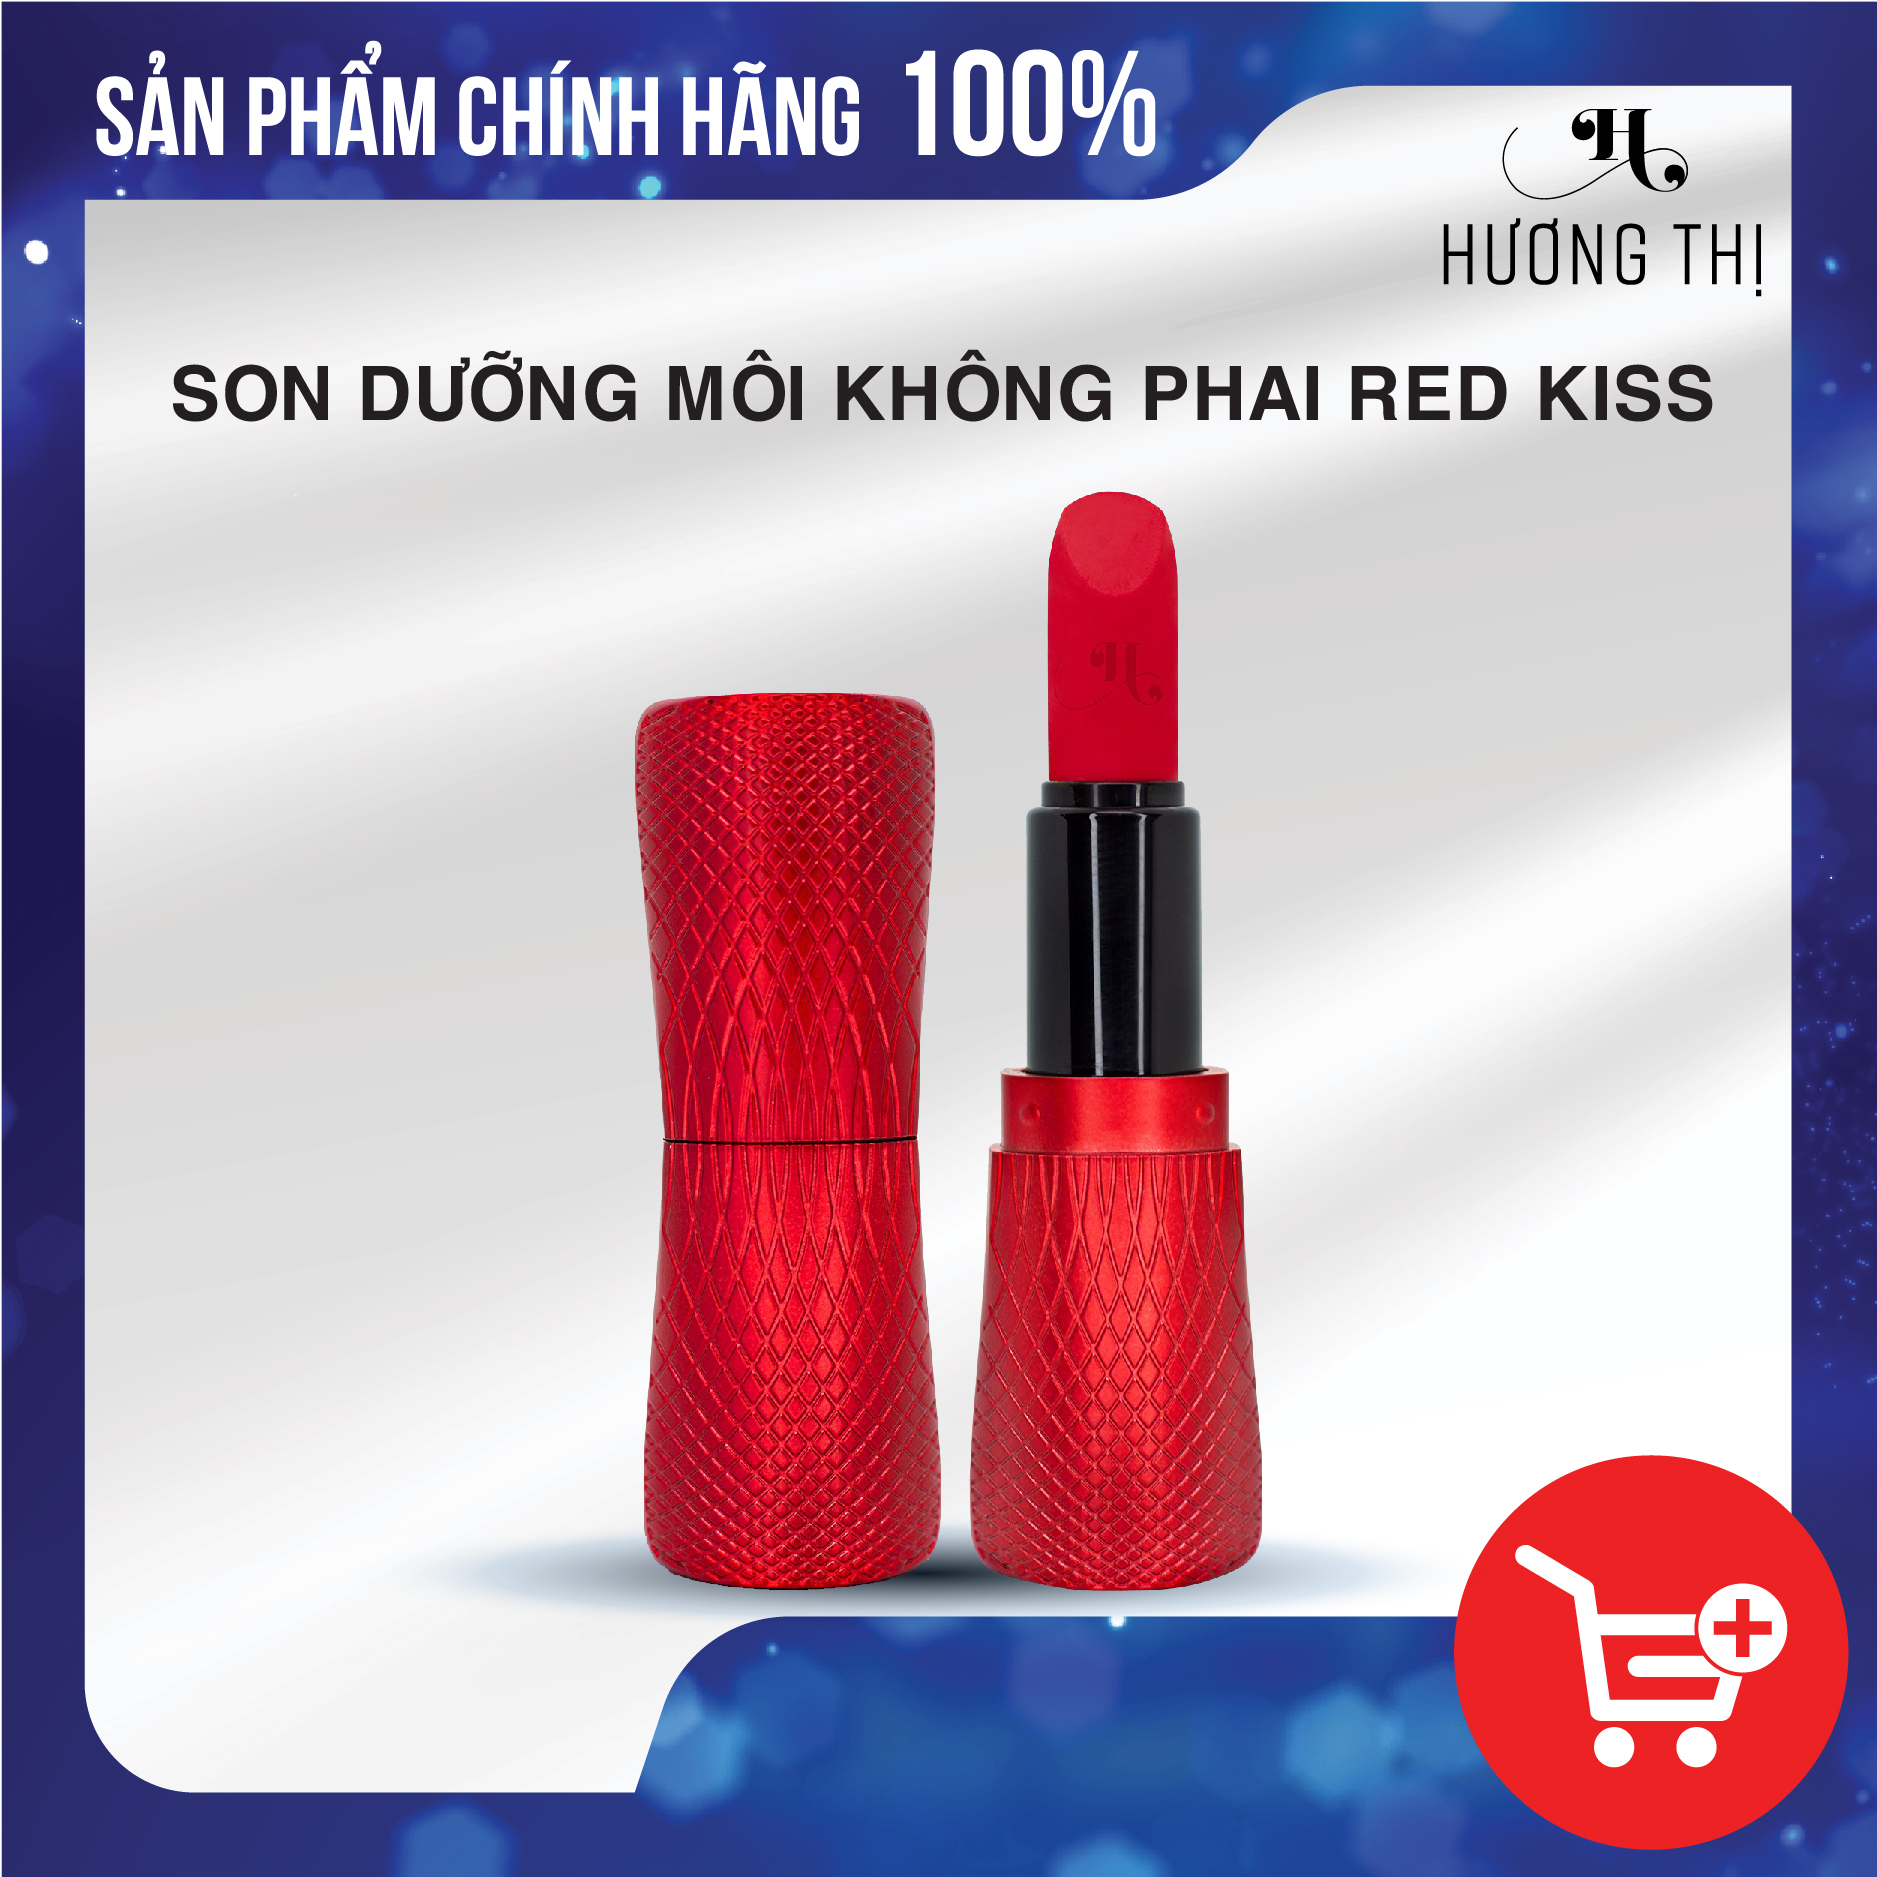 Son Dưỡng Không Phai Hương Thị - Red Kiss